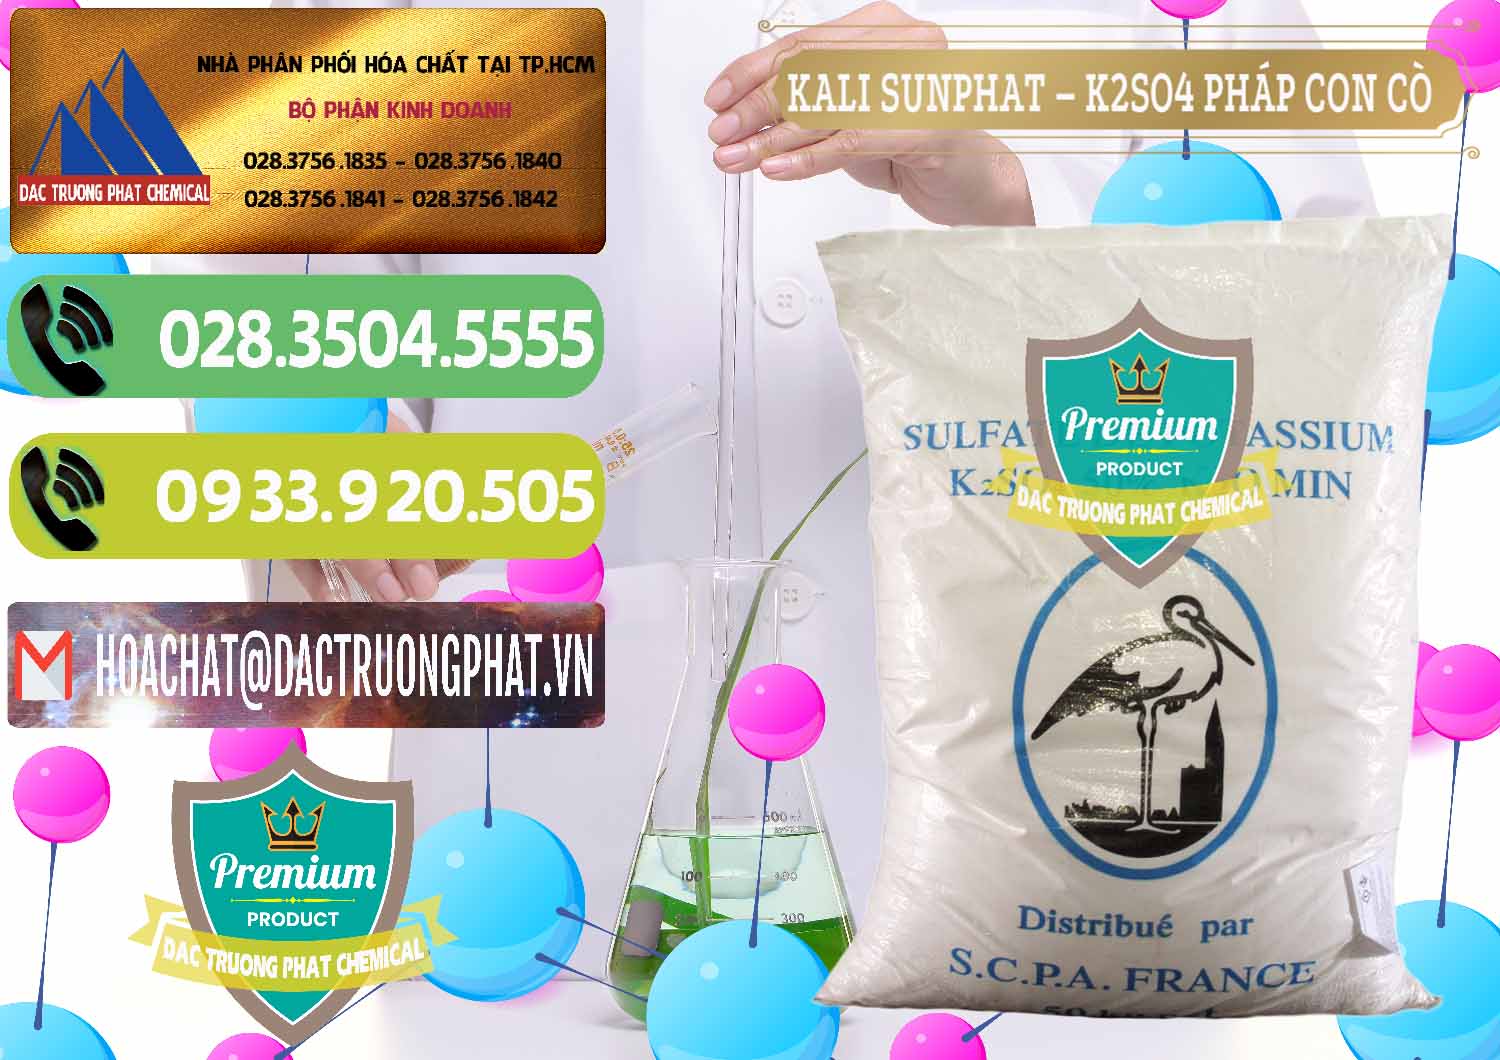 Đơn vị bán và cung ứng Kali Sunphat – K2SO4 Con Cò Pháp France - 0083 - Chuyên phân phối & kinh doanh hóa chất tại TP.HCM - hoachatmientay.vn